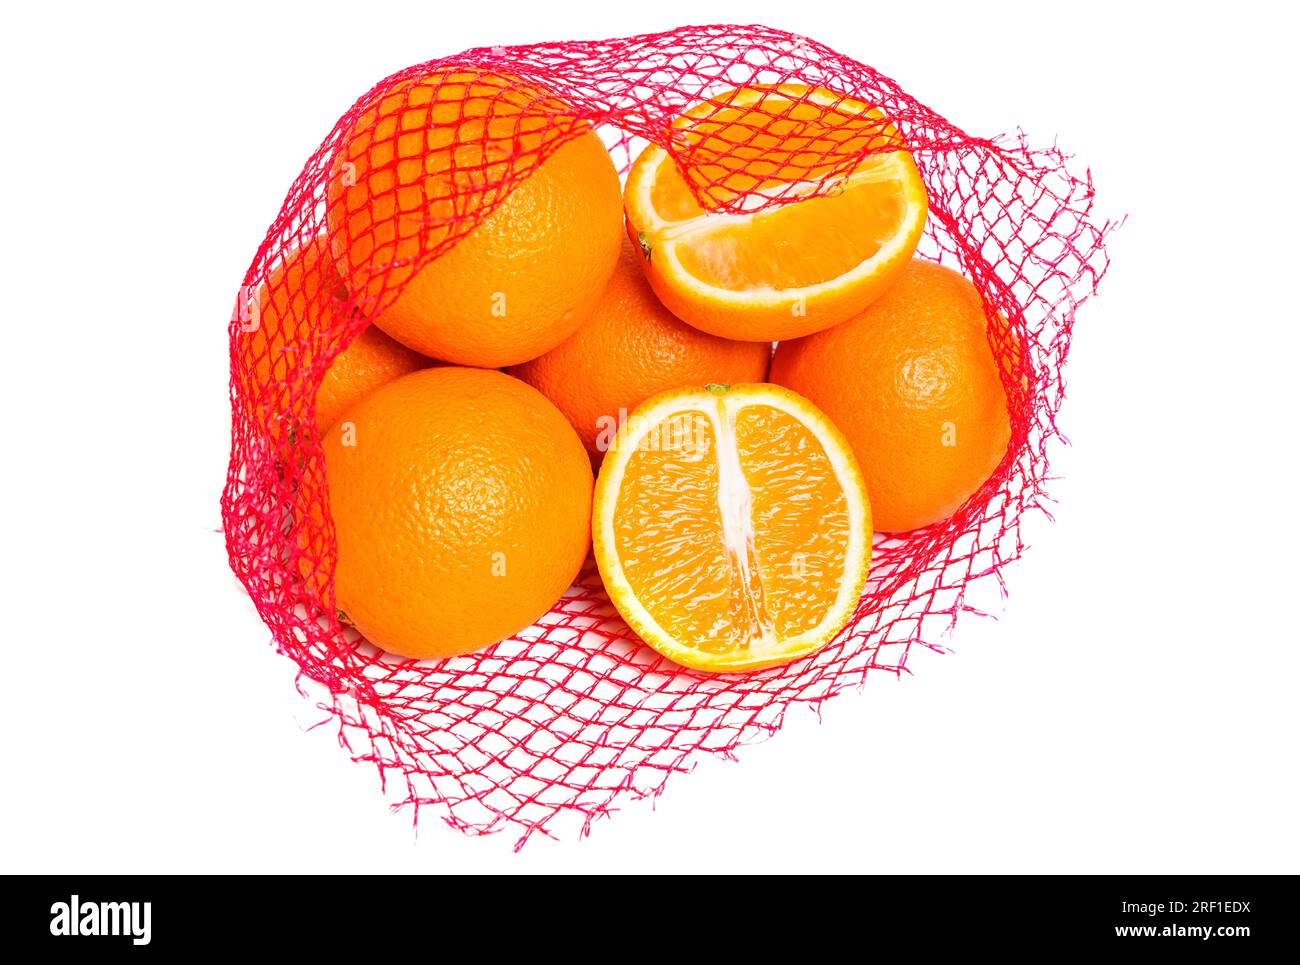 Arance fresche e succose in un sacchetto rosso a rete isolato su sfondo bianco. Un'arancia viene tagliata a metà. Foto Stock